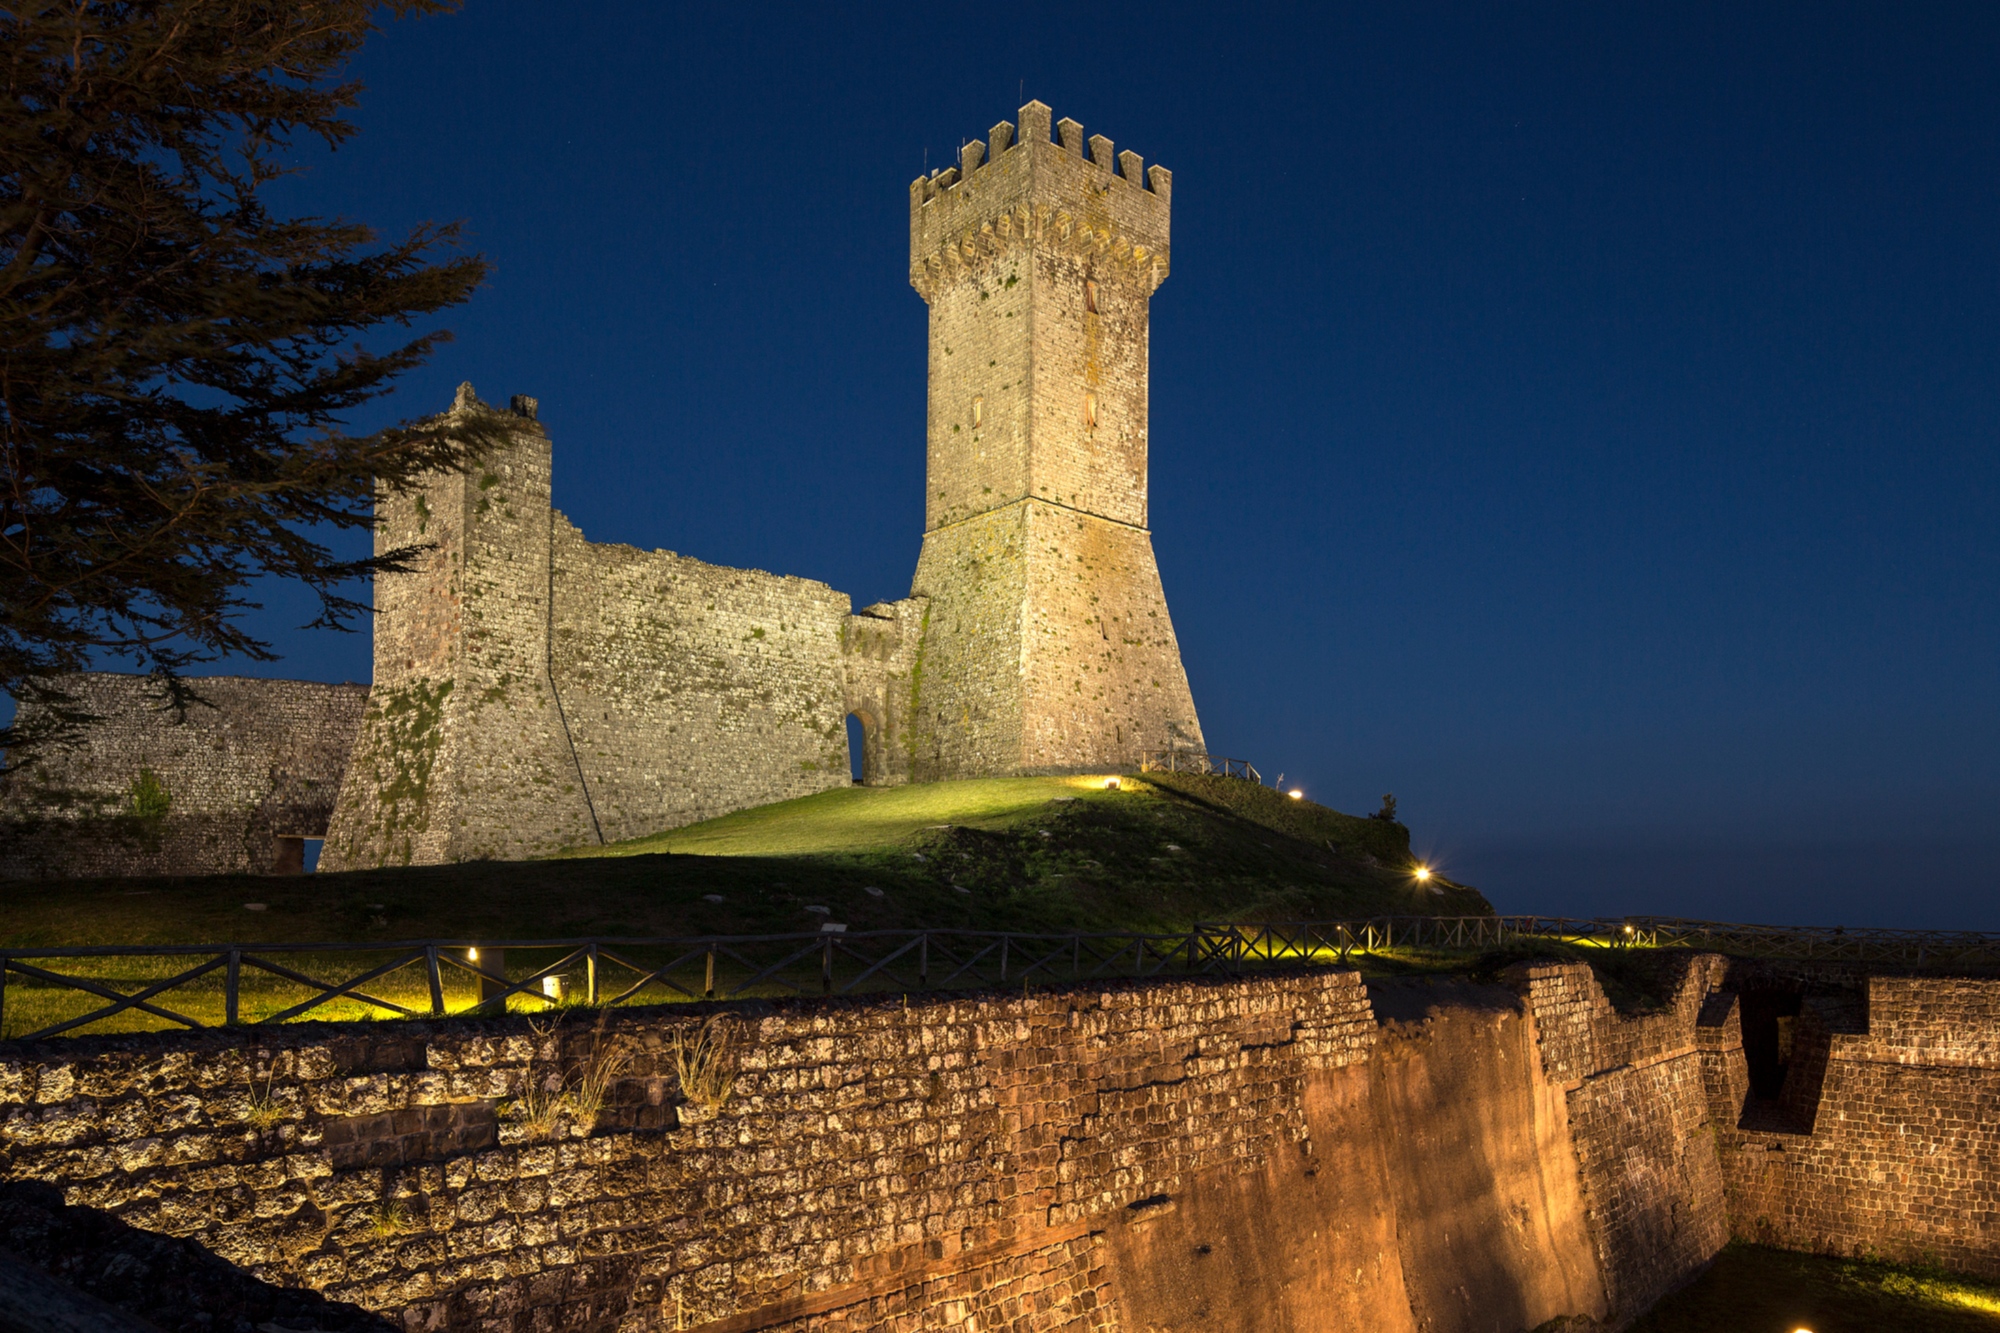 Radicofani fortress at night